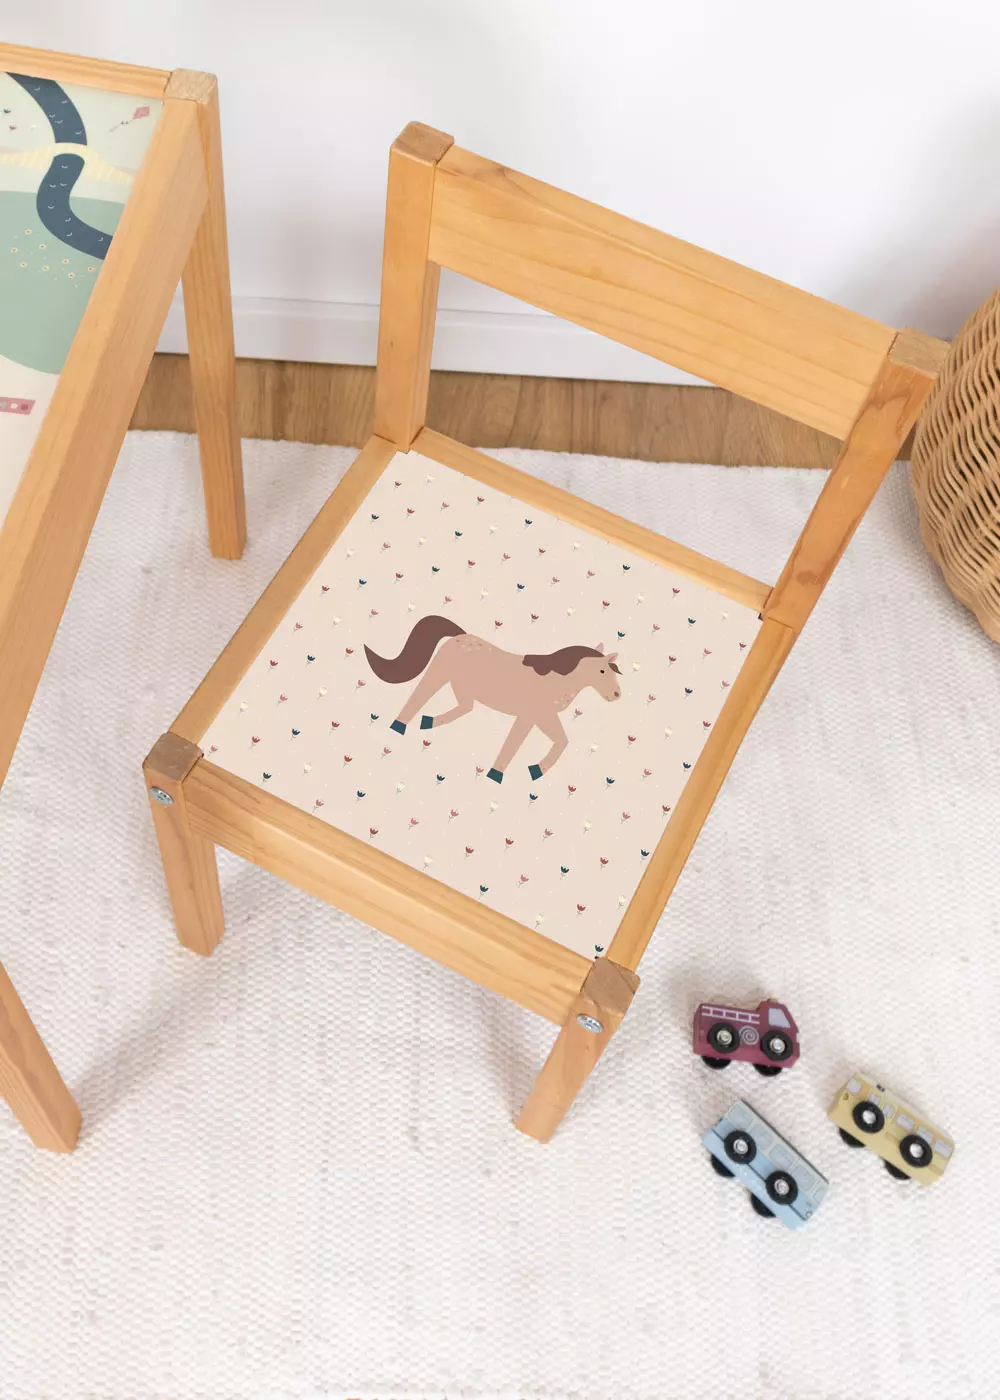 Pferd Klebefolie für Ikea Lätt Kinderhocker personalisierbar